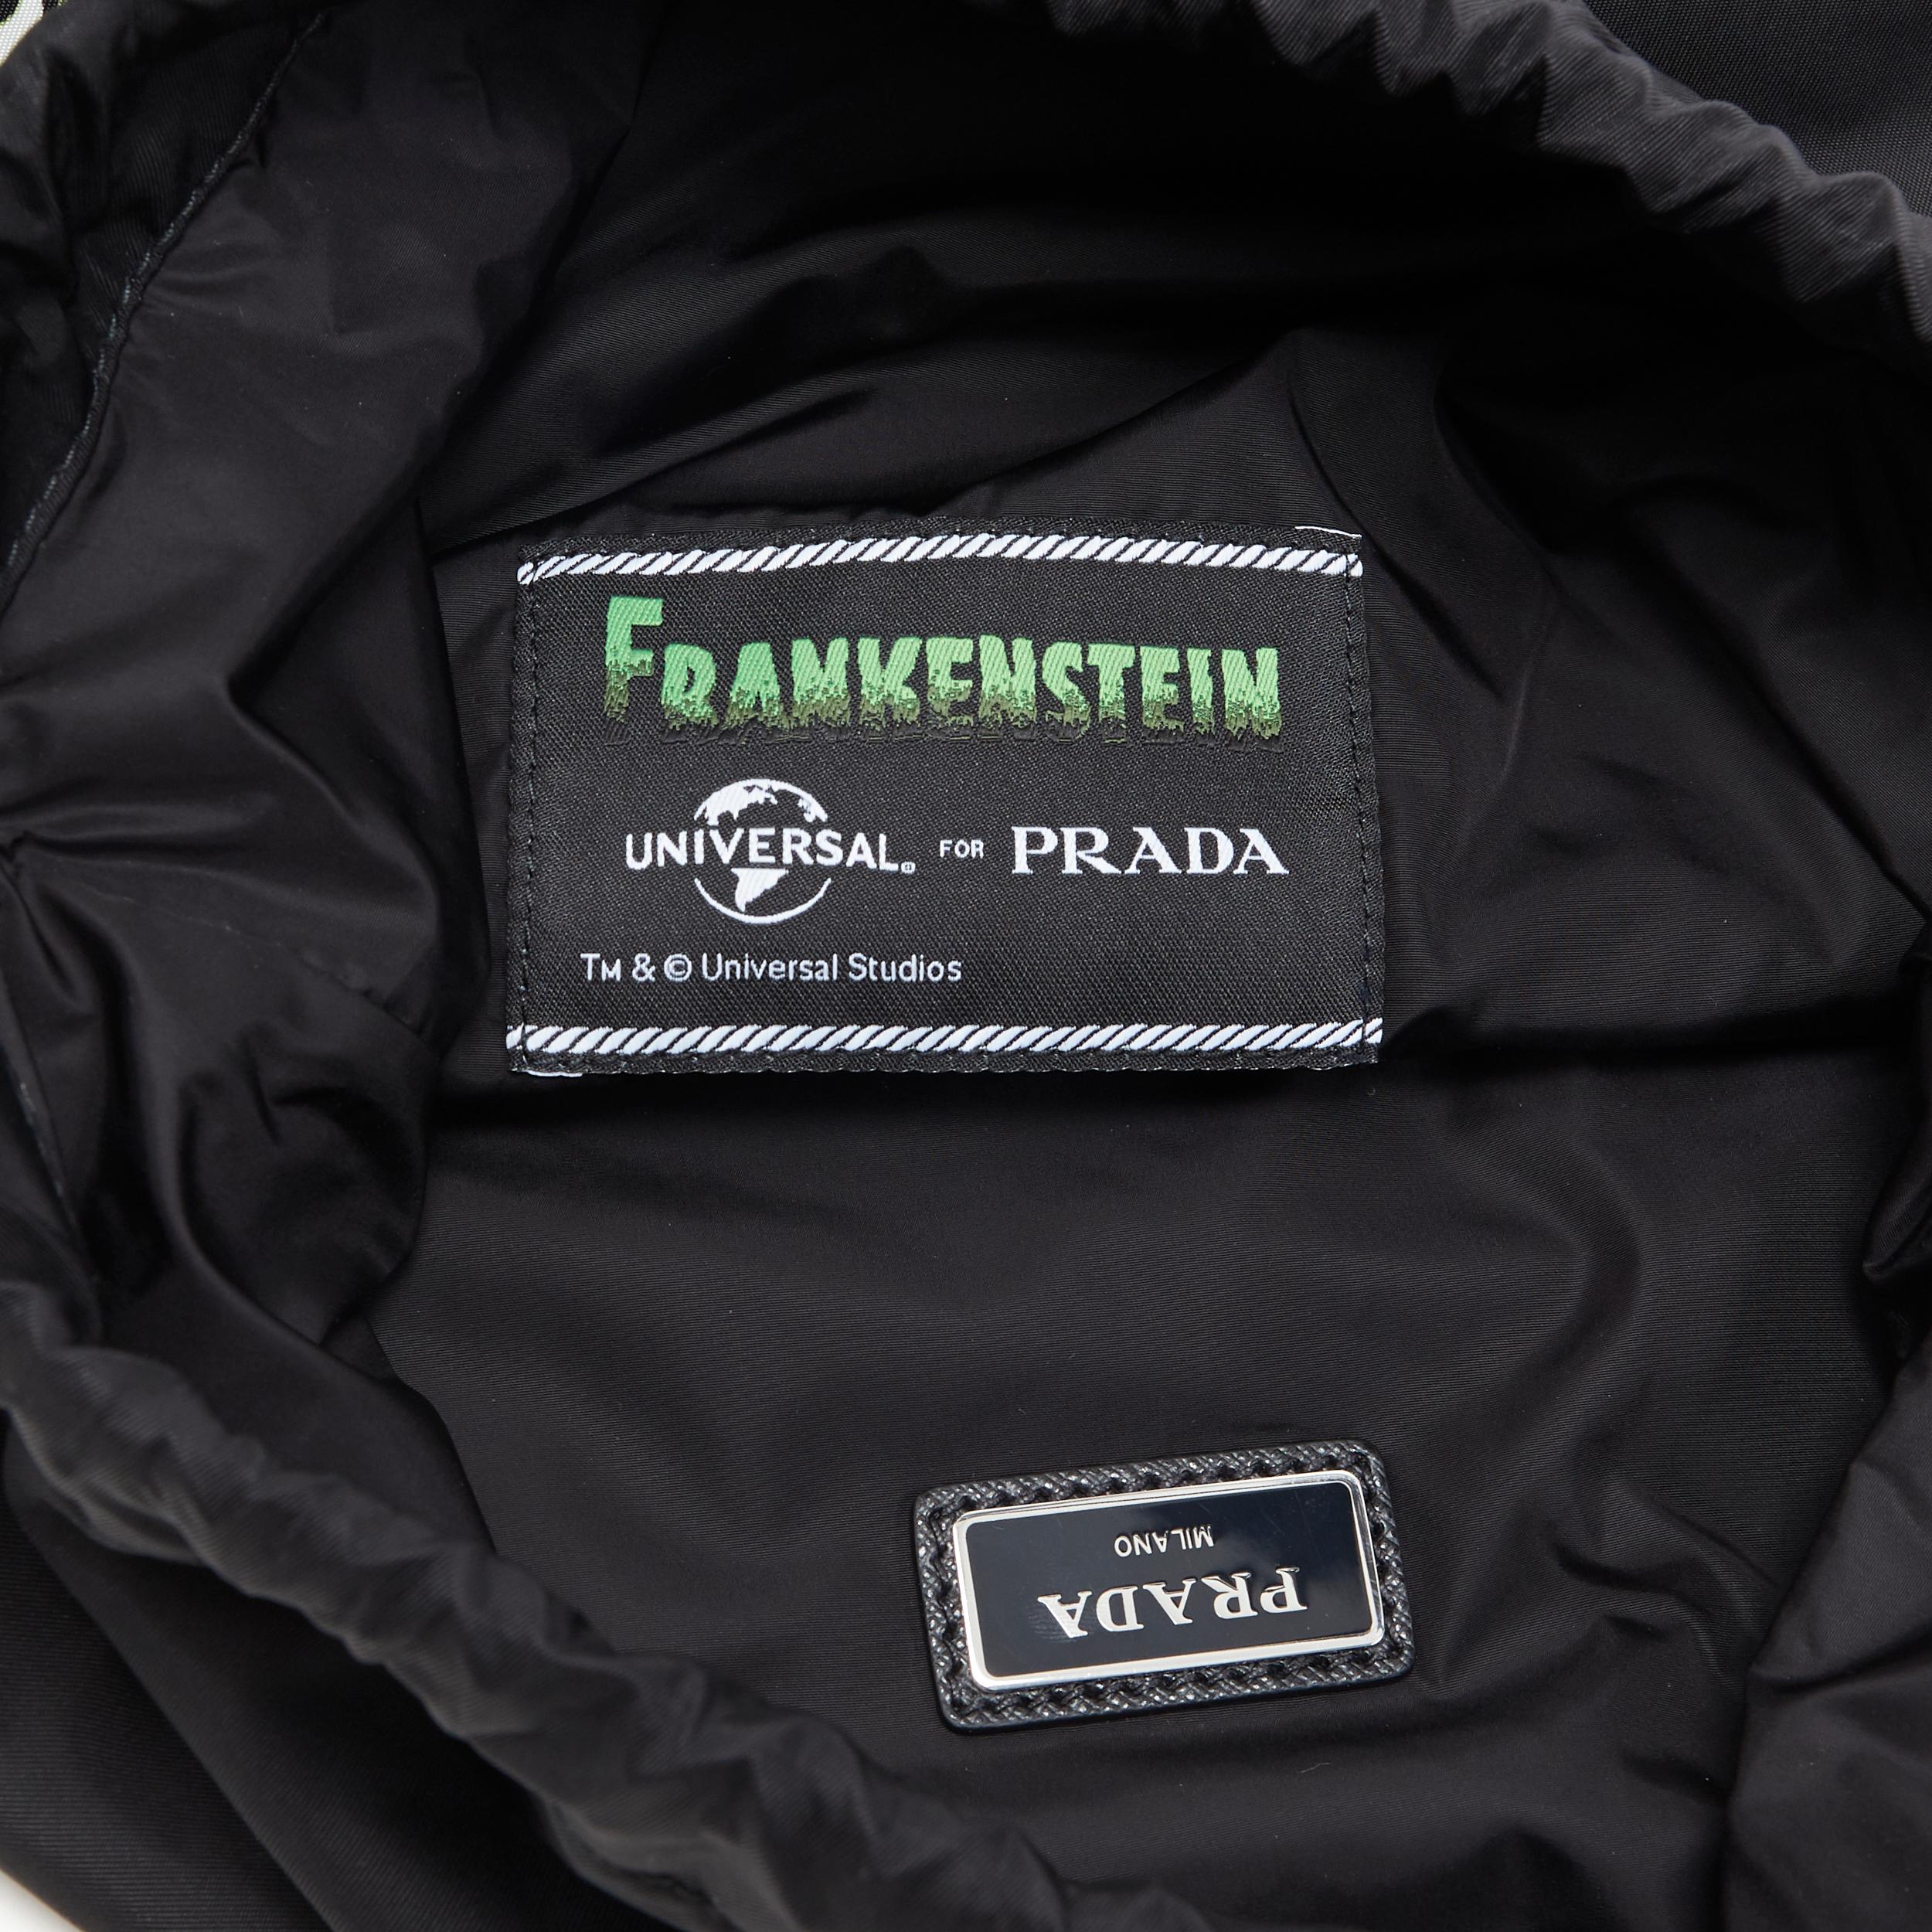 new PRADA 2019 Frankenstein black nylon triangle logo drawstring backpack bag 4